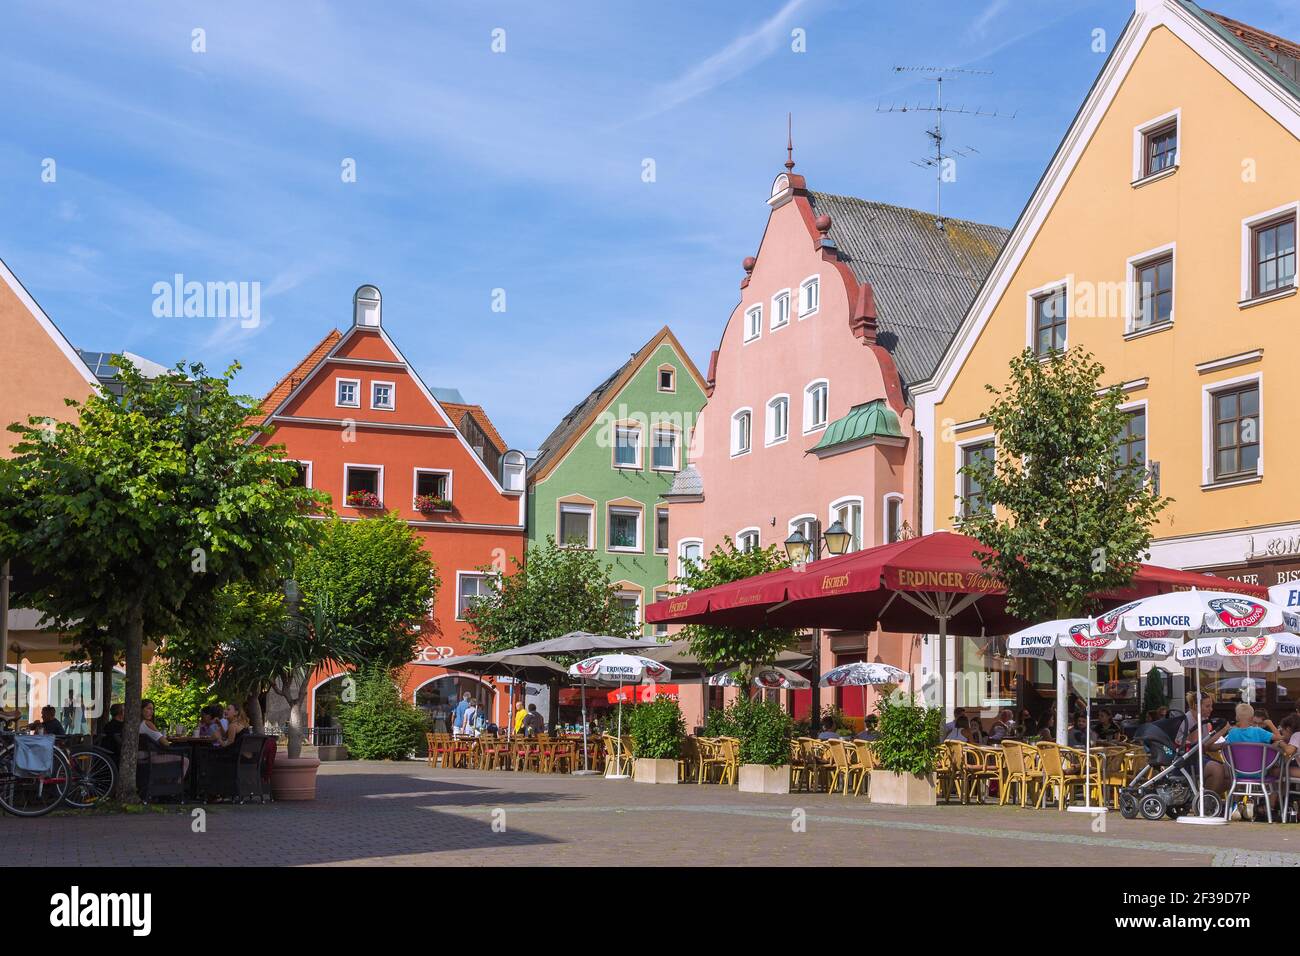 Geographie / Reisen, Deutschland, Bayern, Erding, kleiner Platz, Straßencafé, zusätzliche-Rights-Clearance-Info-not-available Stockfoto